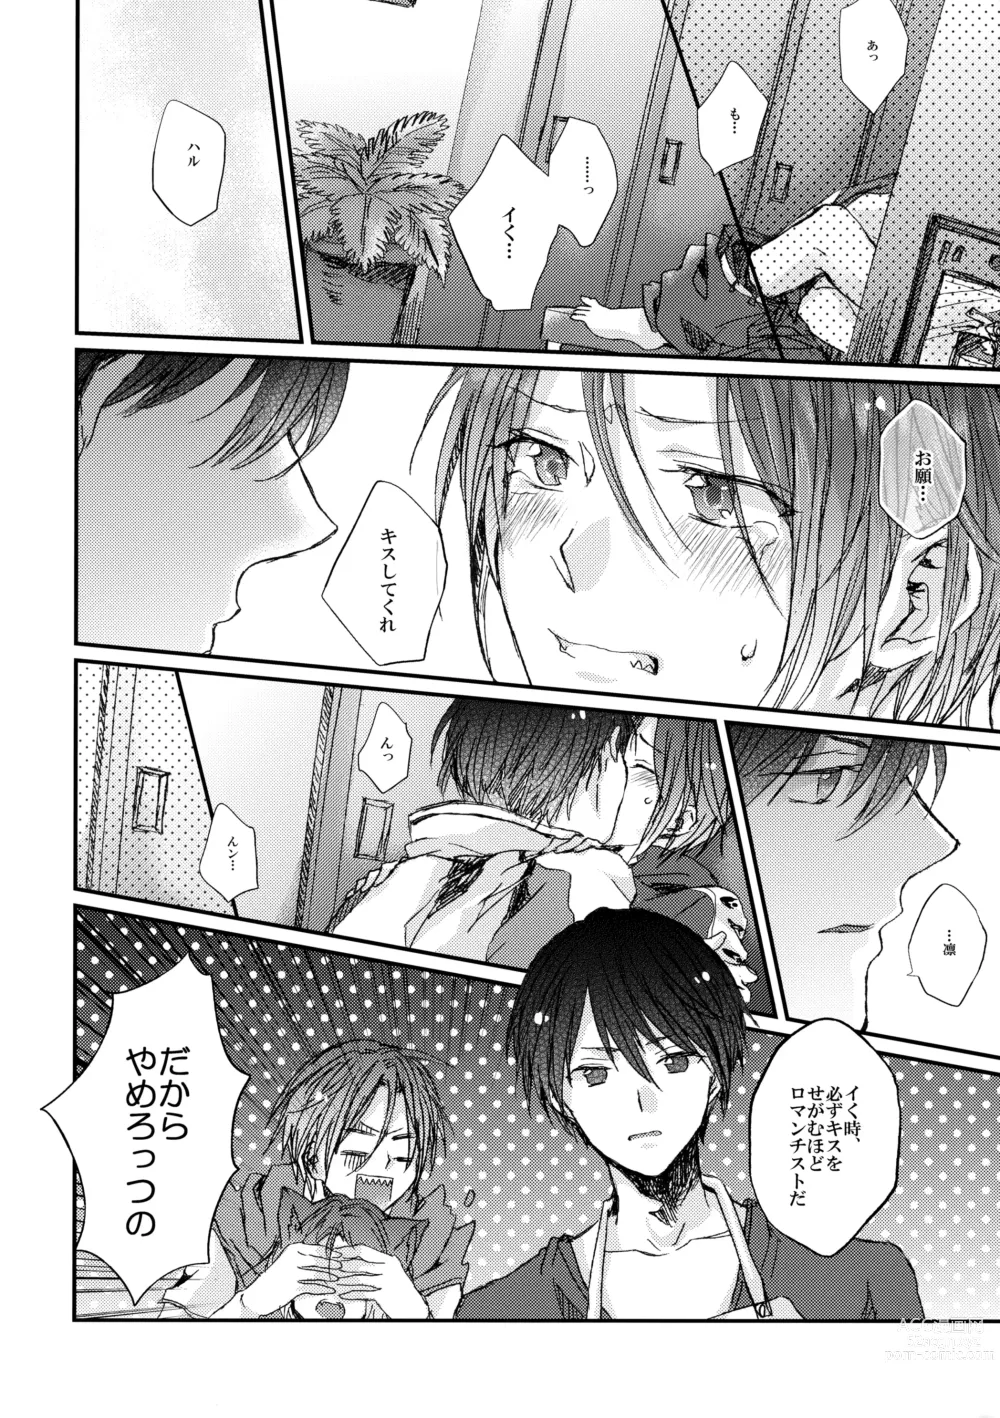 Page 15 of doujinshi Rin-chan nau!